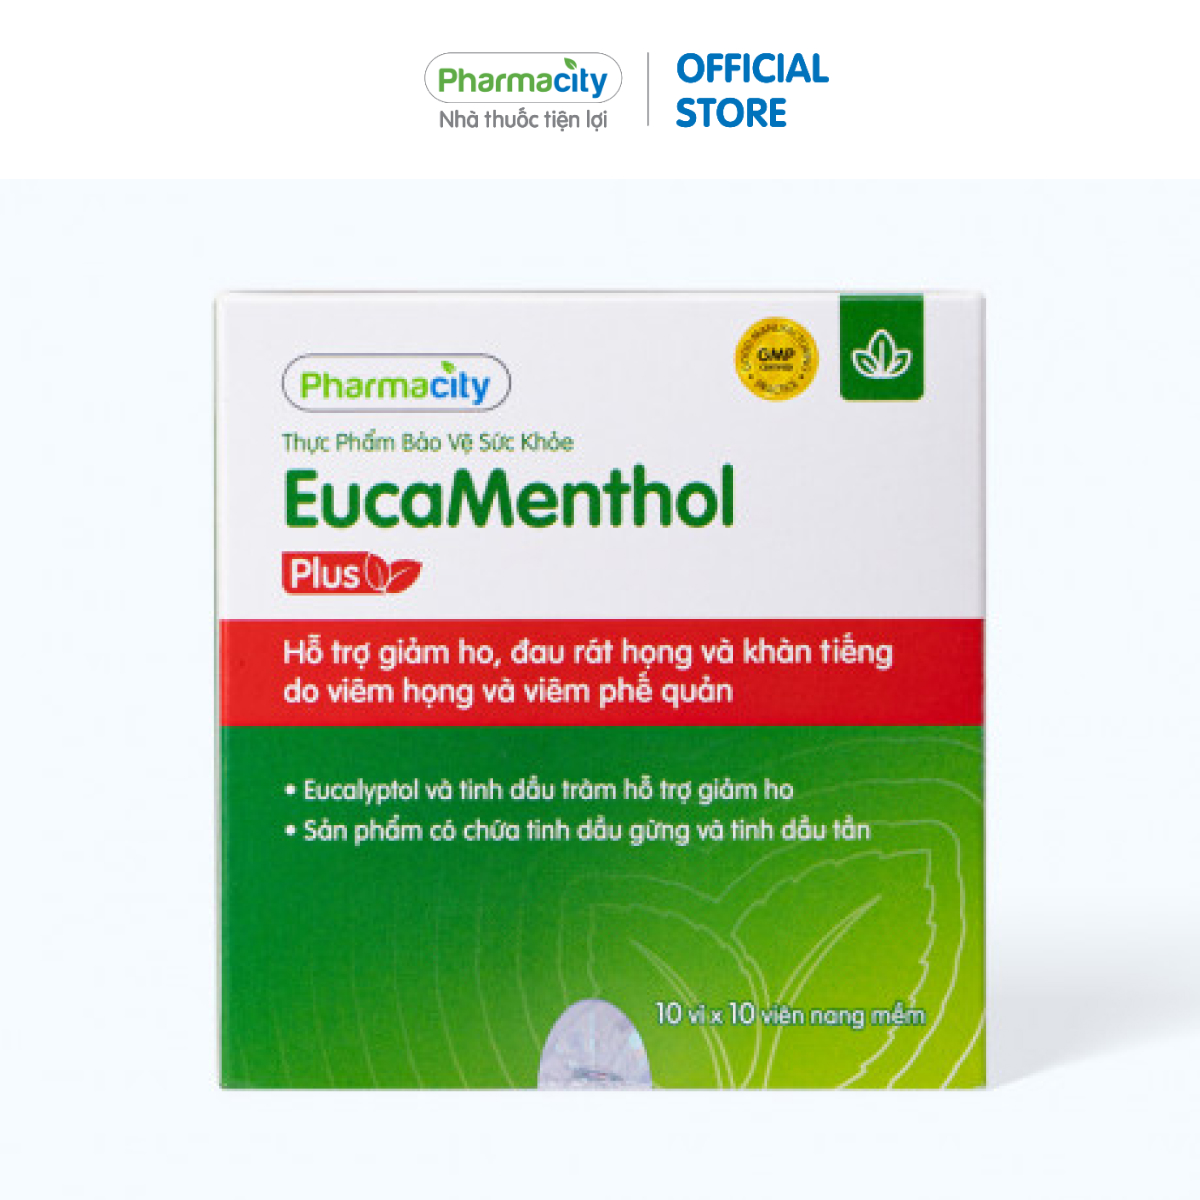 Viên uống EucaMenthol Plus hỗ trợ giảm ho, rát họng Hộp 100 viên 10 vỉ x